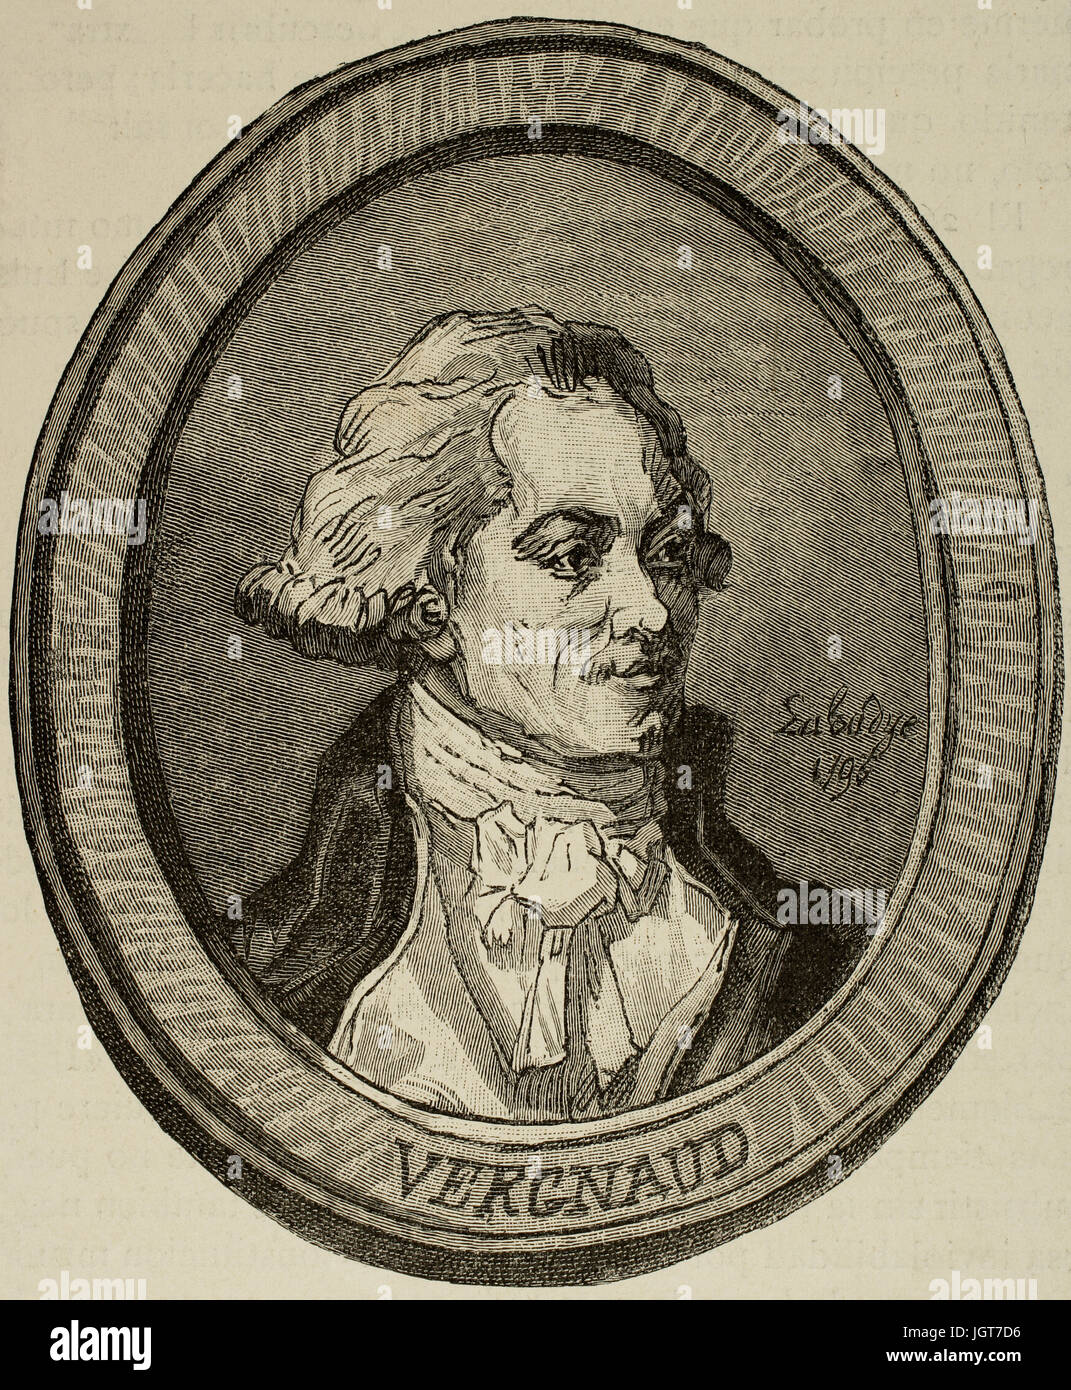 Pierre Victurnien Vergniaud (1753-1793). Französischer Staatsmann. Kupferstich von Labadye in Universalgeschichte, 1883. Stockfoto